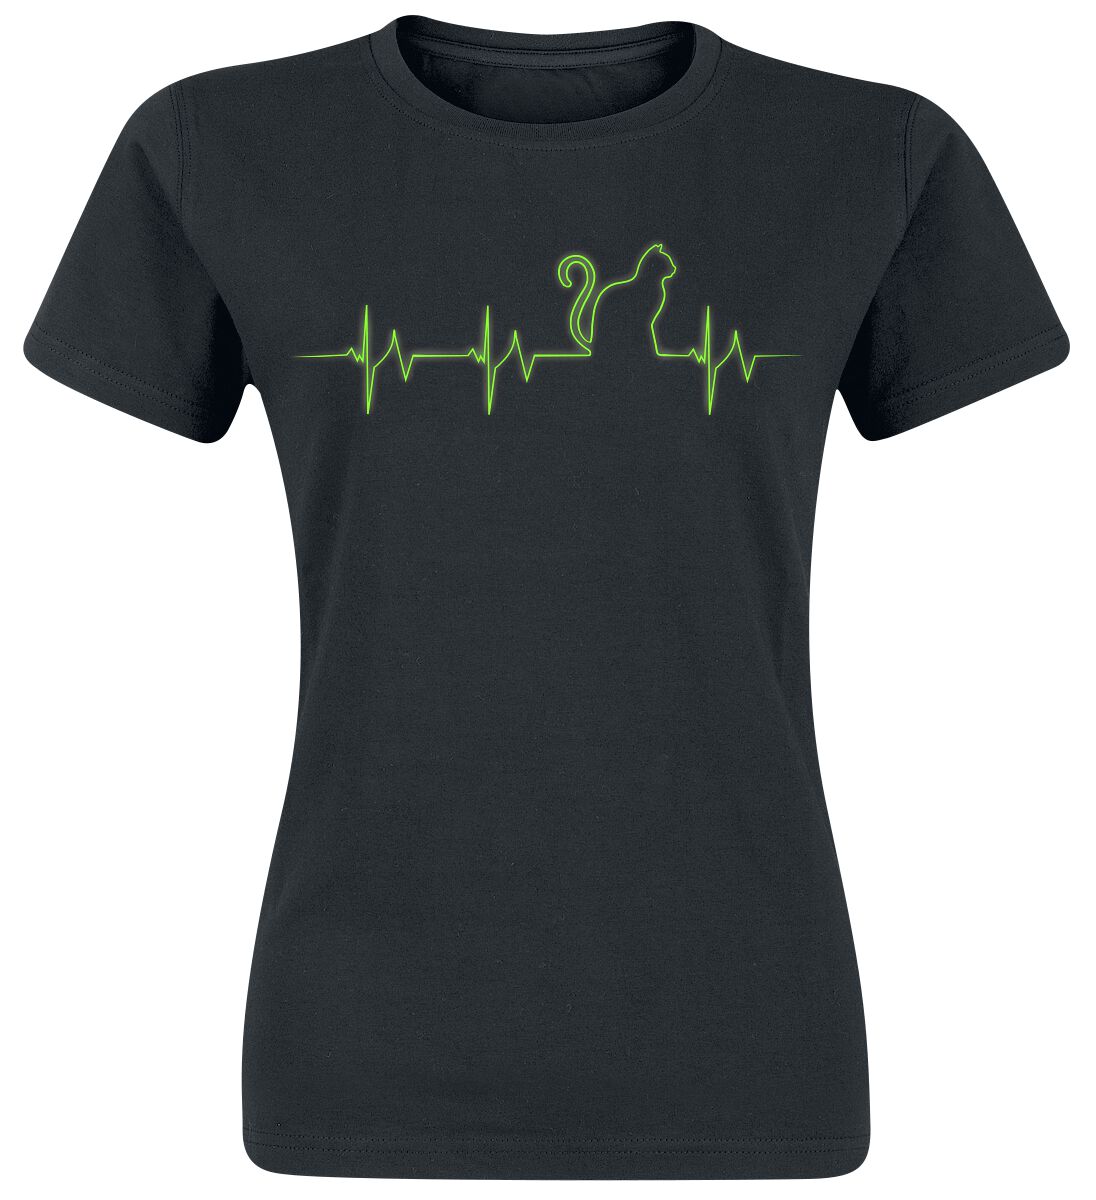 T-Shirt Manches courtes Fun de Tierisch - Katzogramm - S à XXL - pour Femme - noir